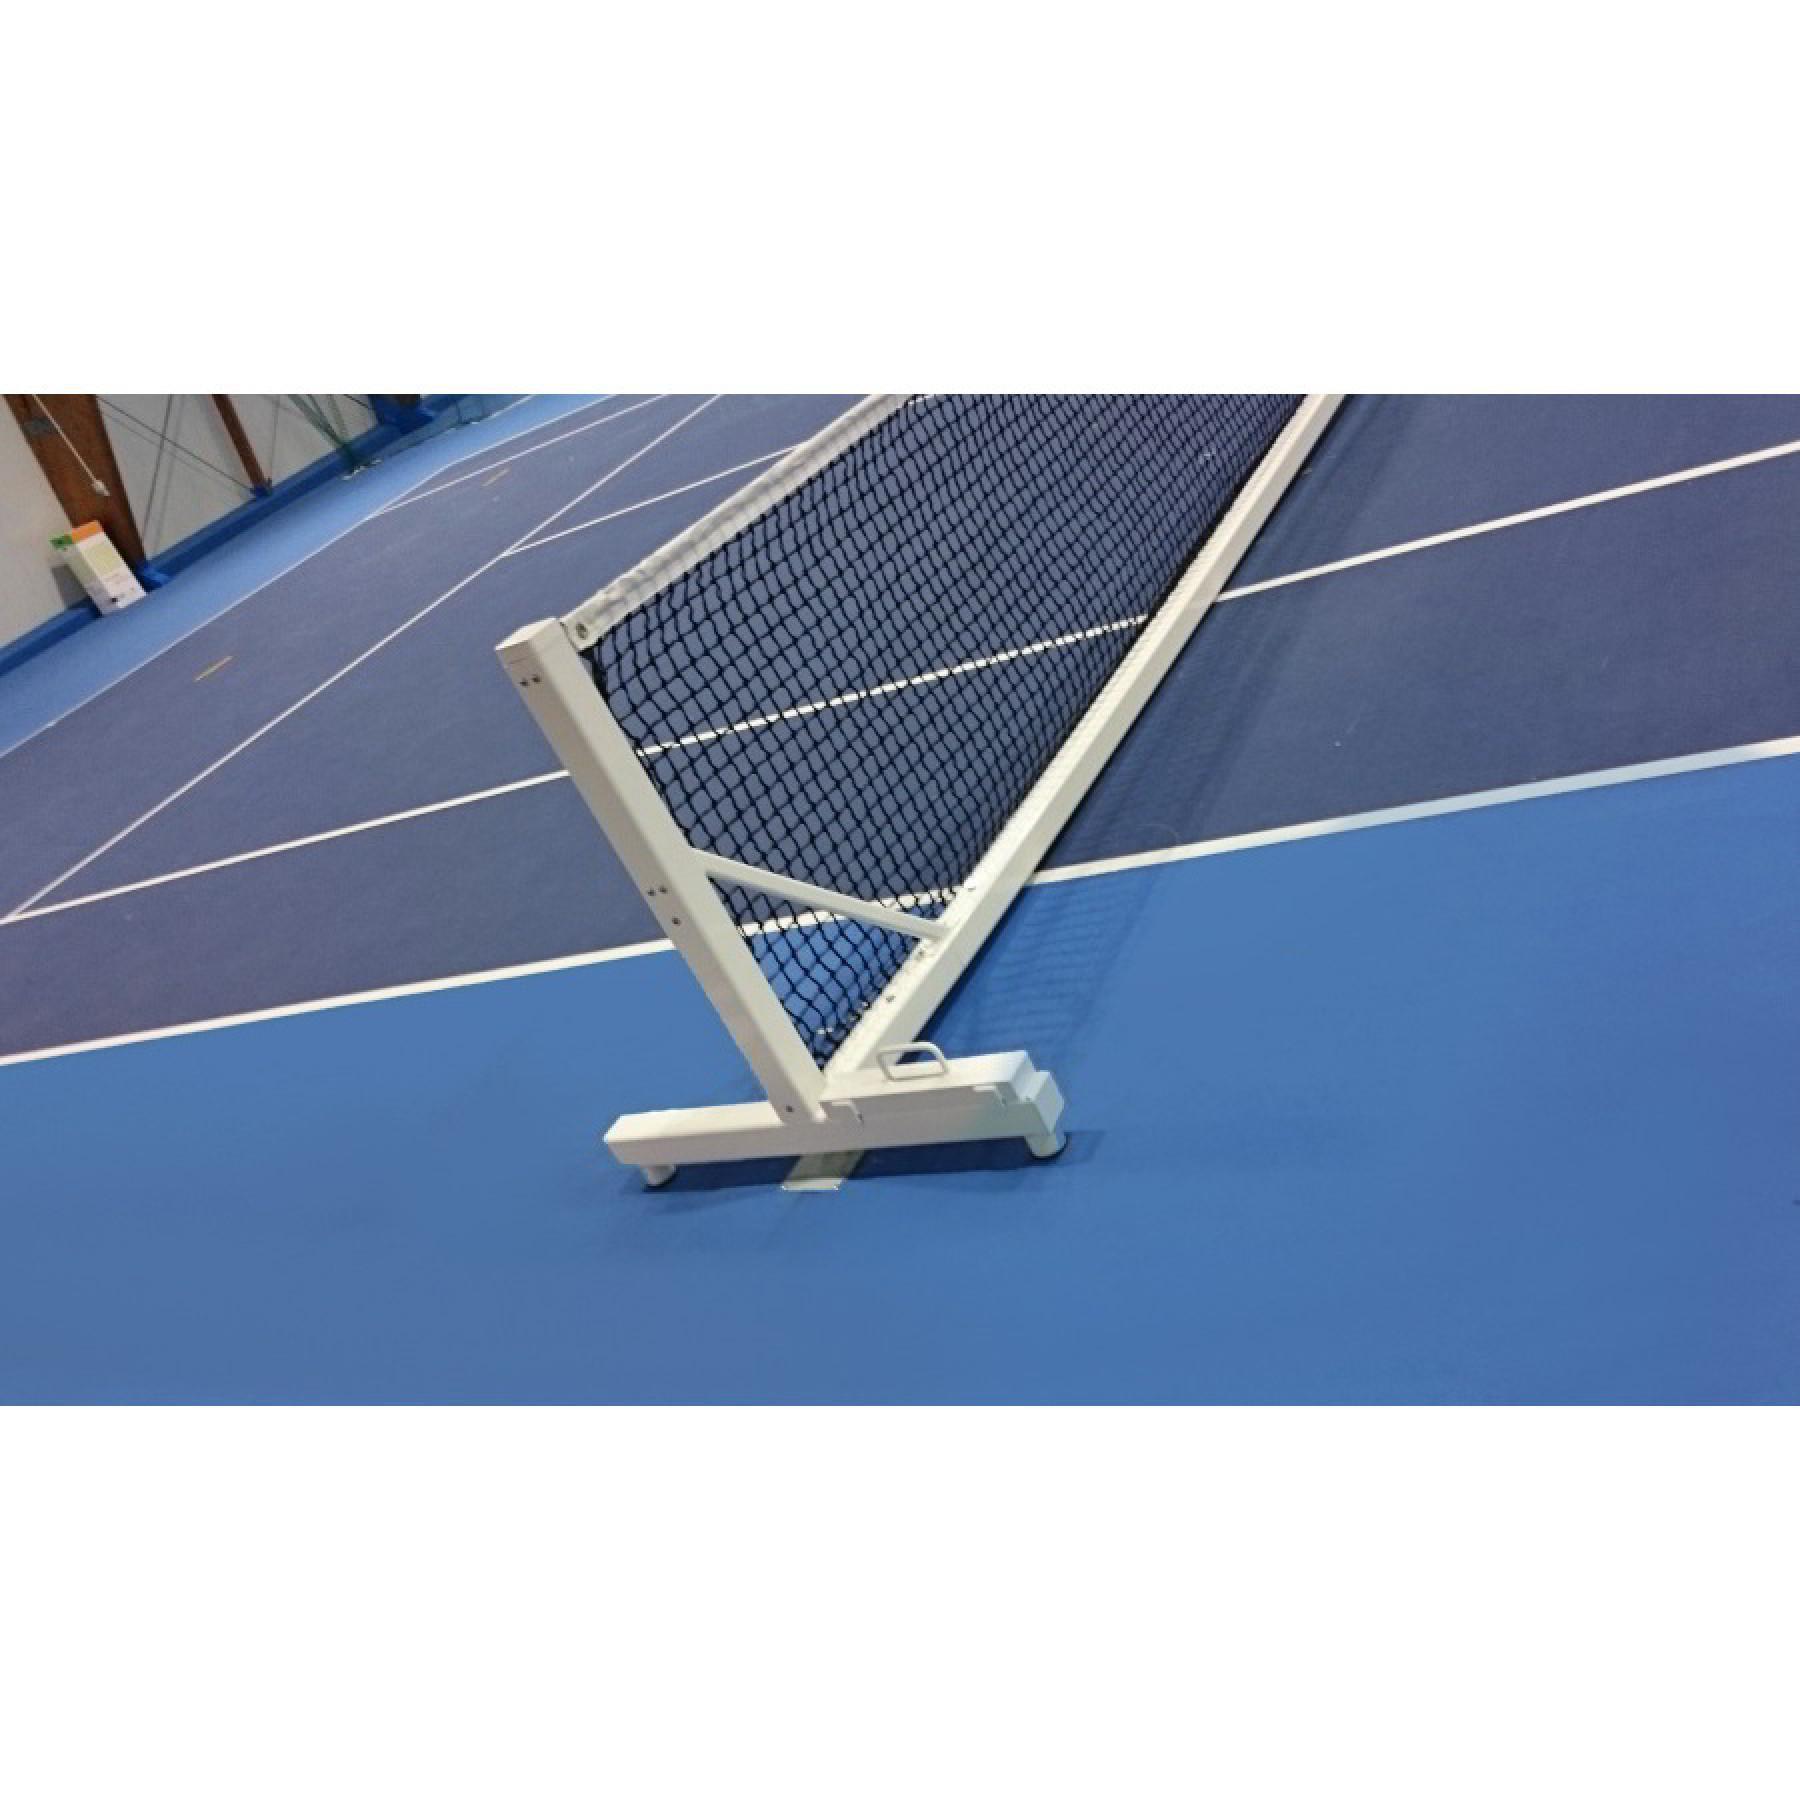 Integrerad transportabel tennisstolpe i stål Carrington